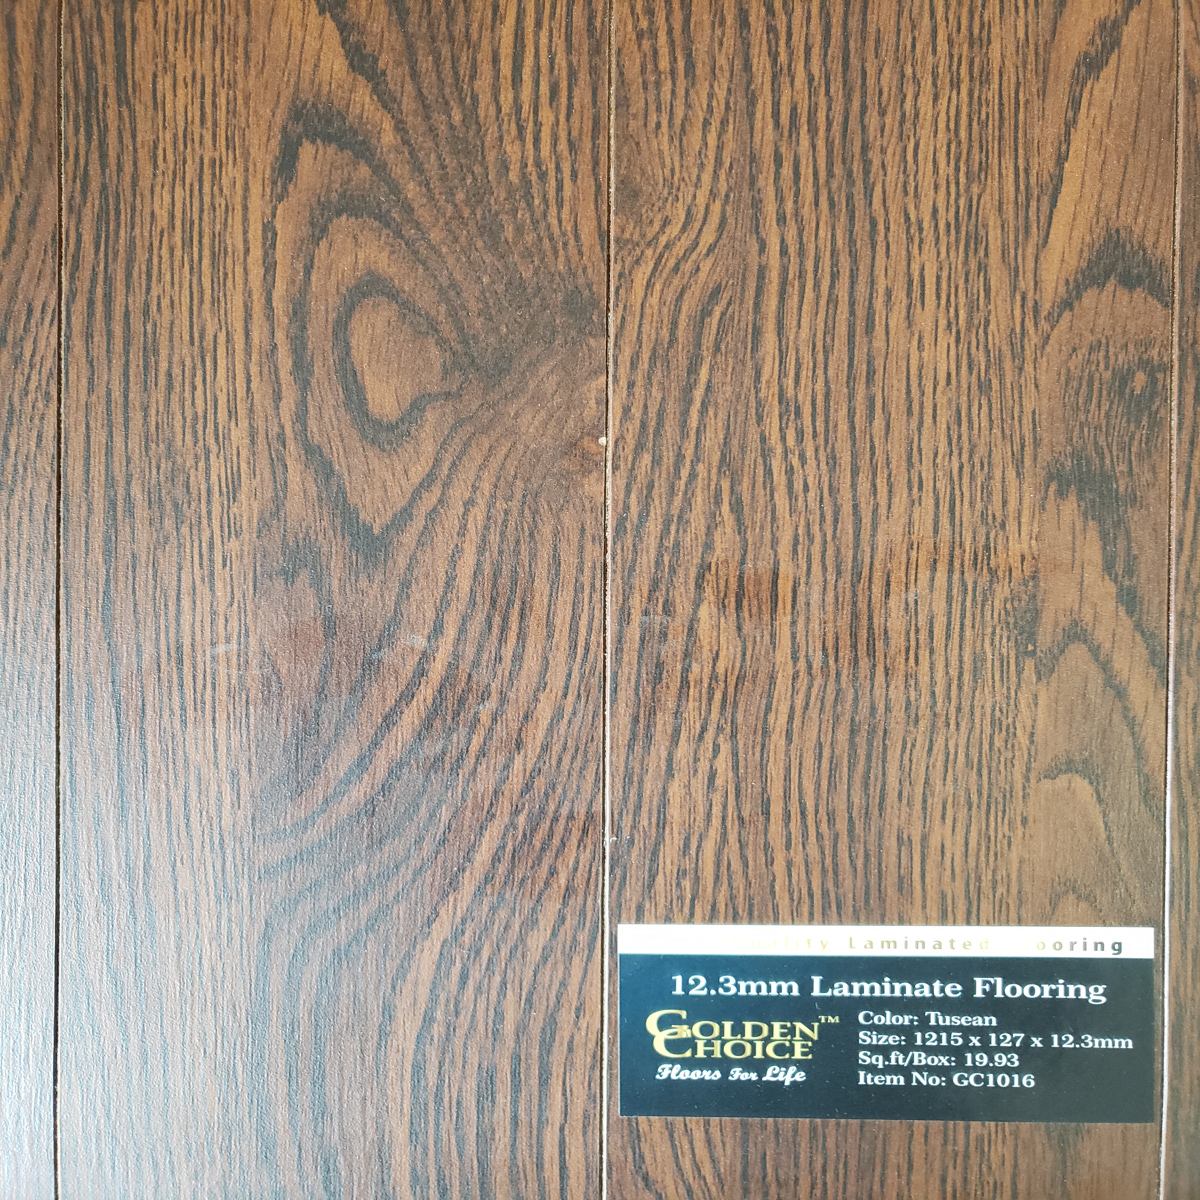 laminate Laminate Tuscan Gc1016 Laminate Flooring